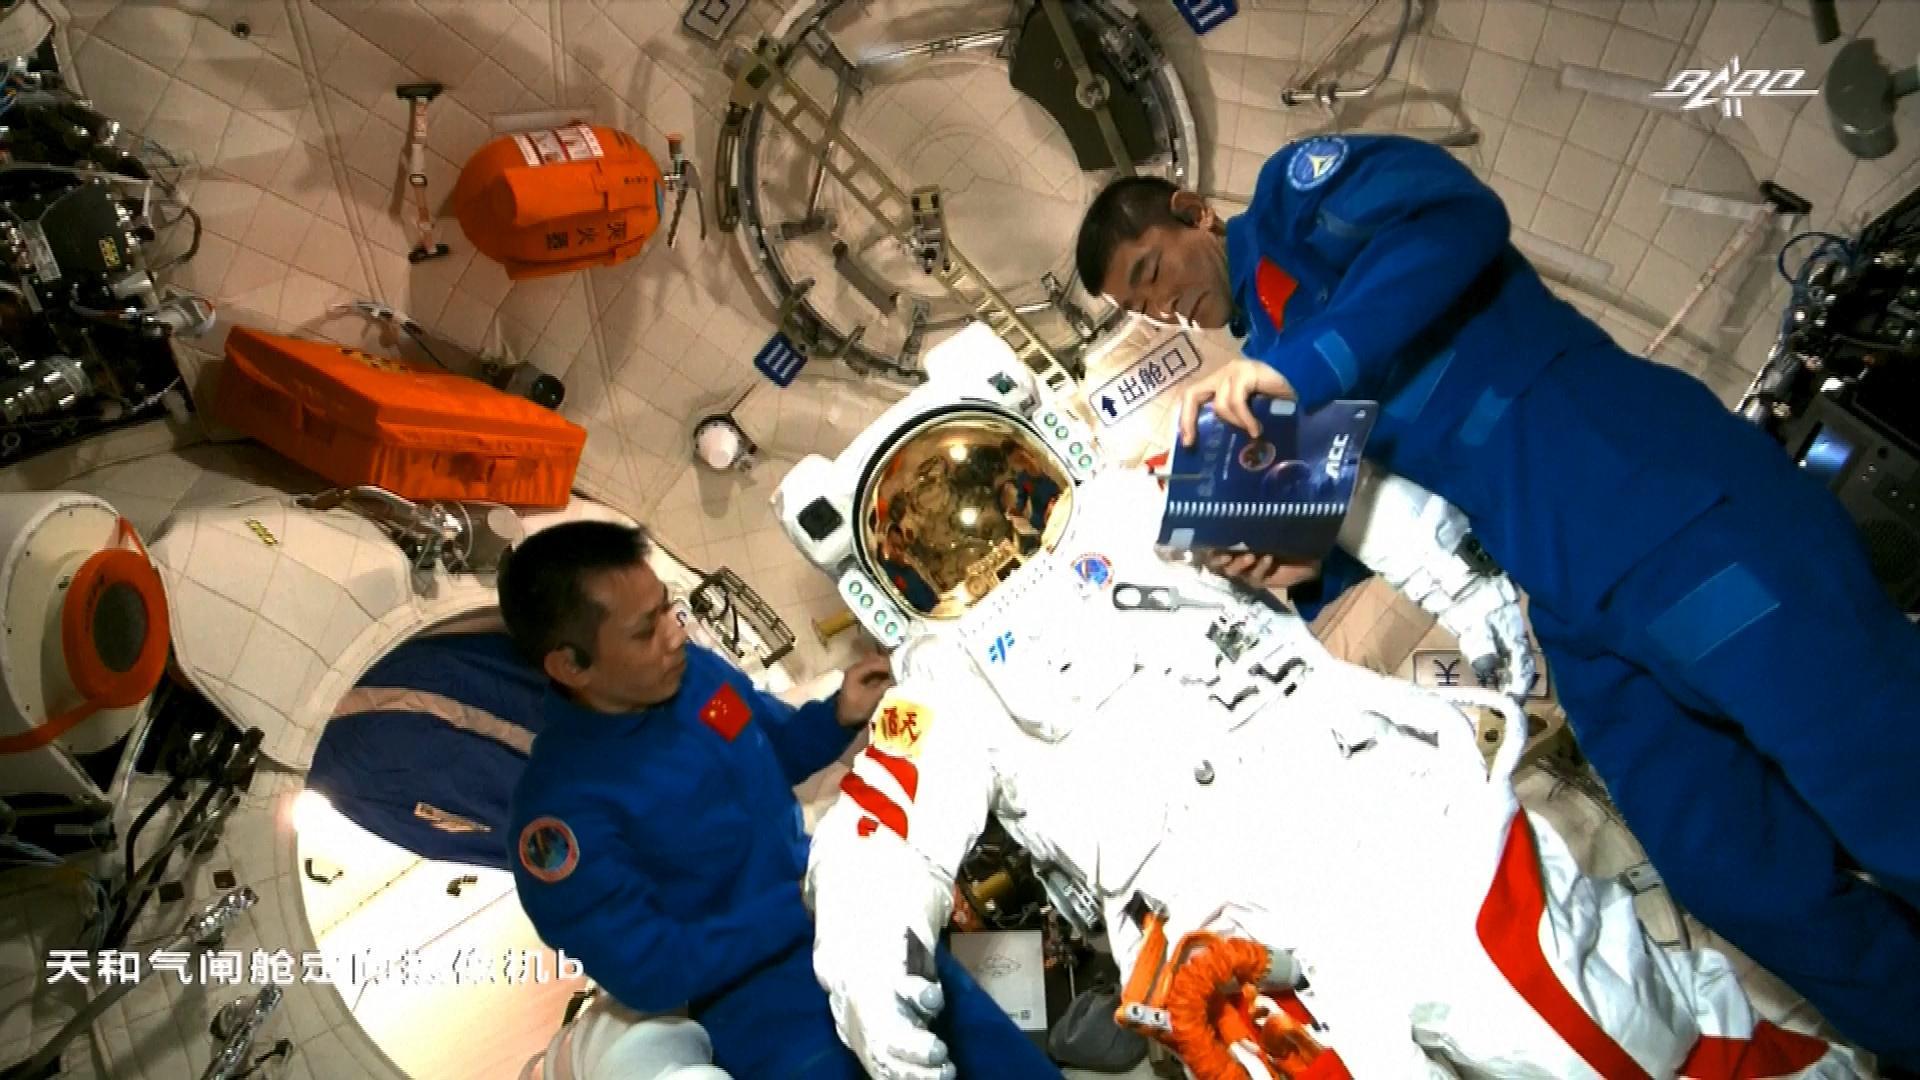 Первый астронавт вышедший в космос. Орбитальная станция Тяньгун. Тяньгун и МКС. Тяньгун 2021. Китайские Тайконавты на космической станции.